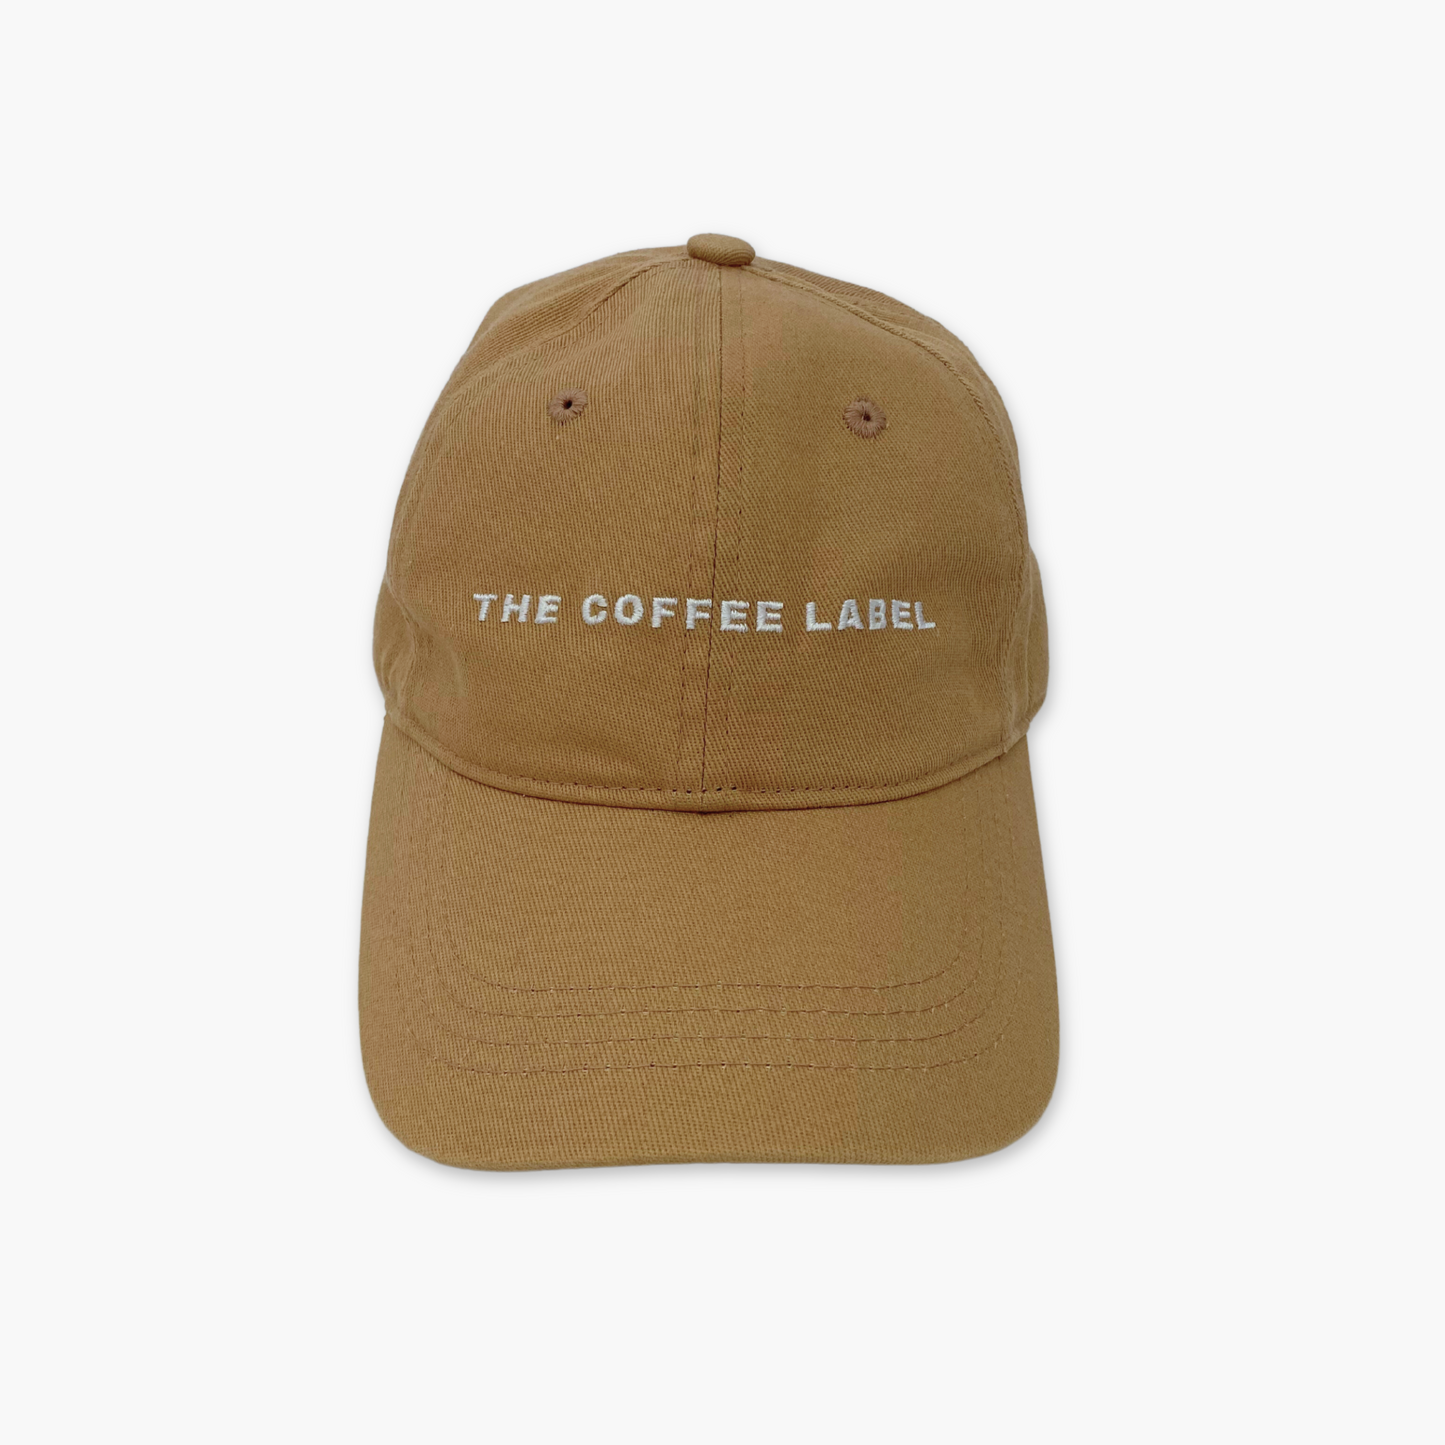 The Coffee Cap